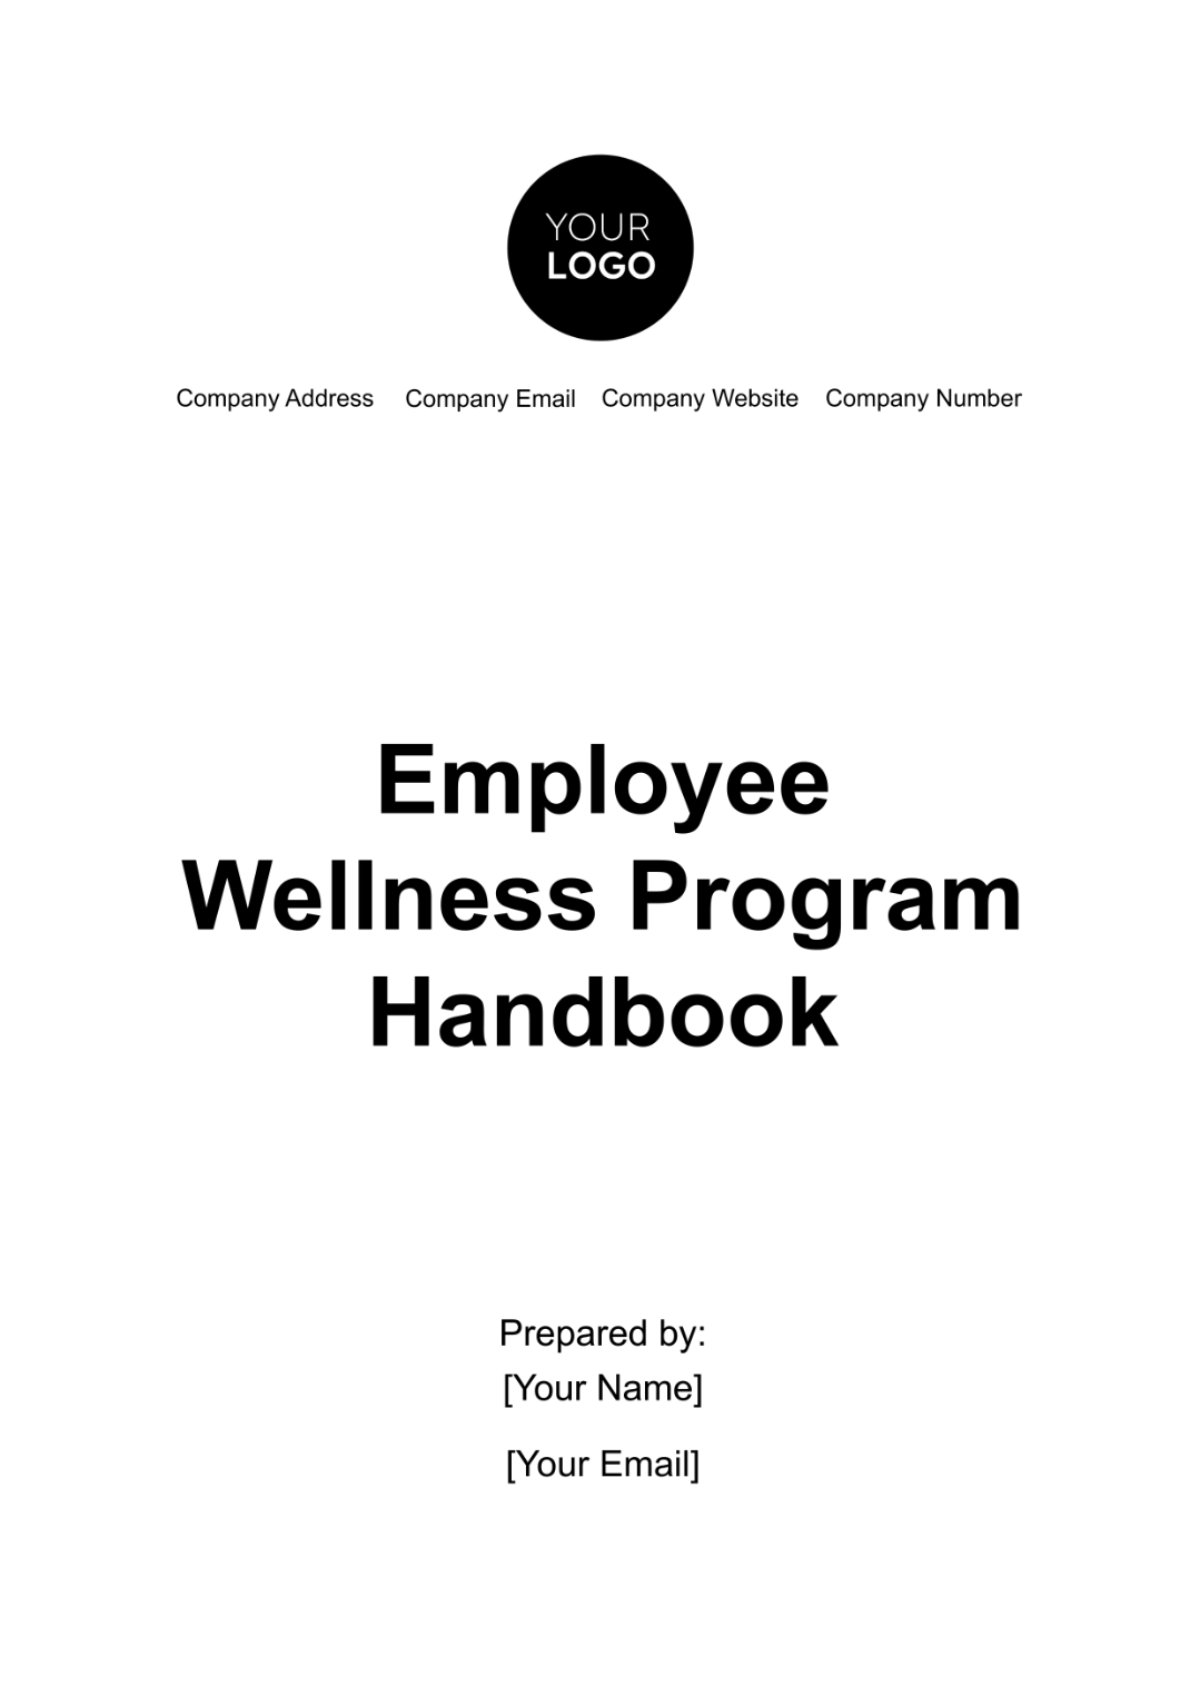 Employee Wellness Program Handbook Template